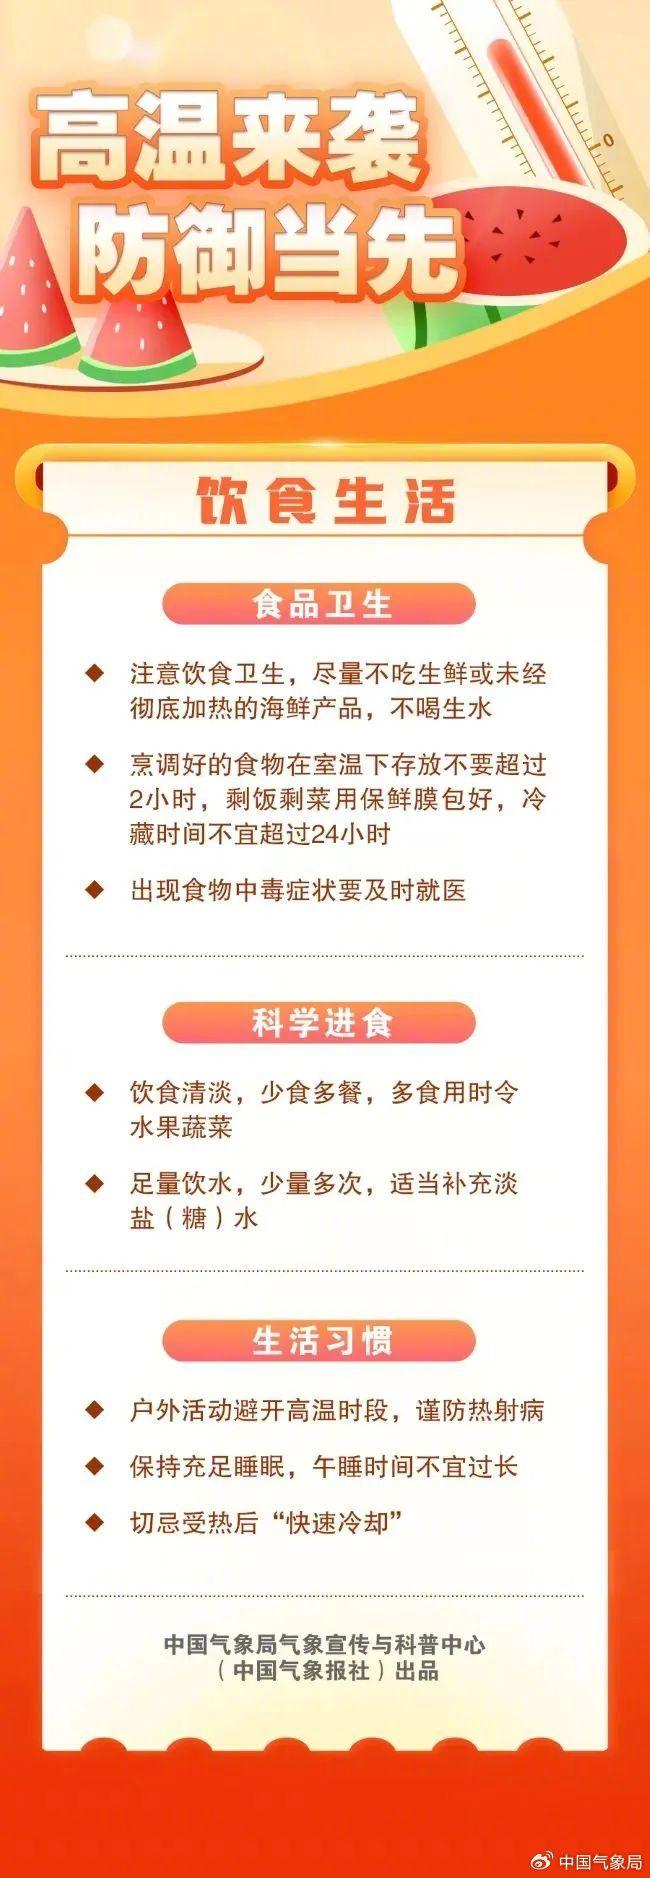 中央气象台自6月9日起连续发布高温橙色预警,中国气象局公共气象服务